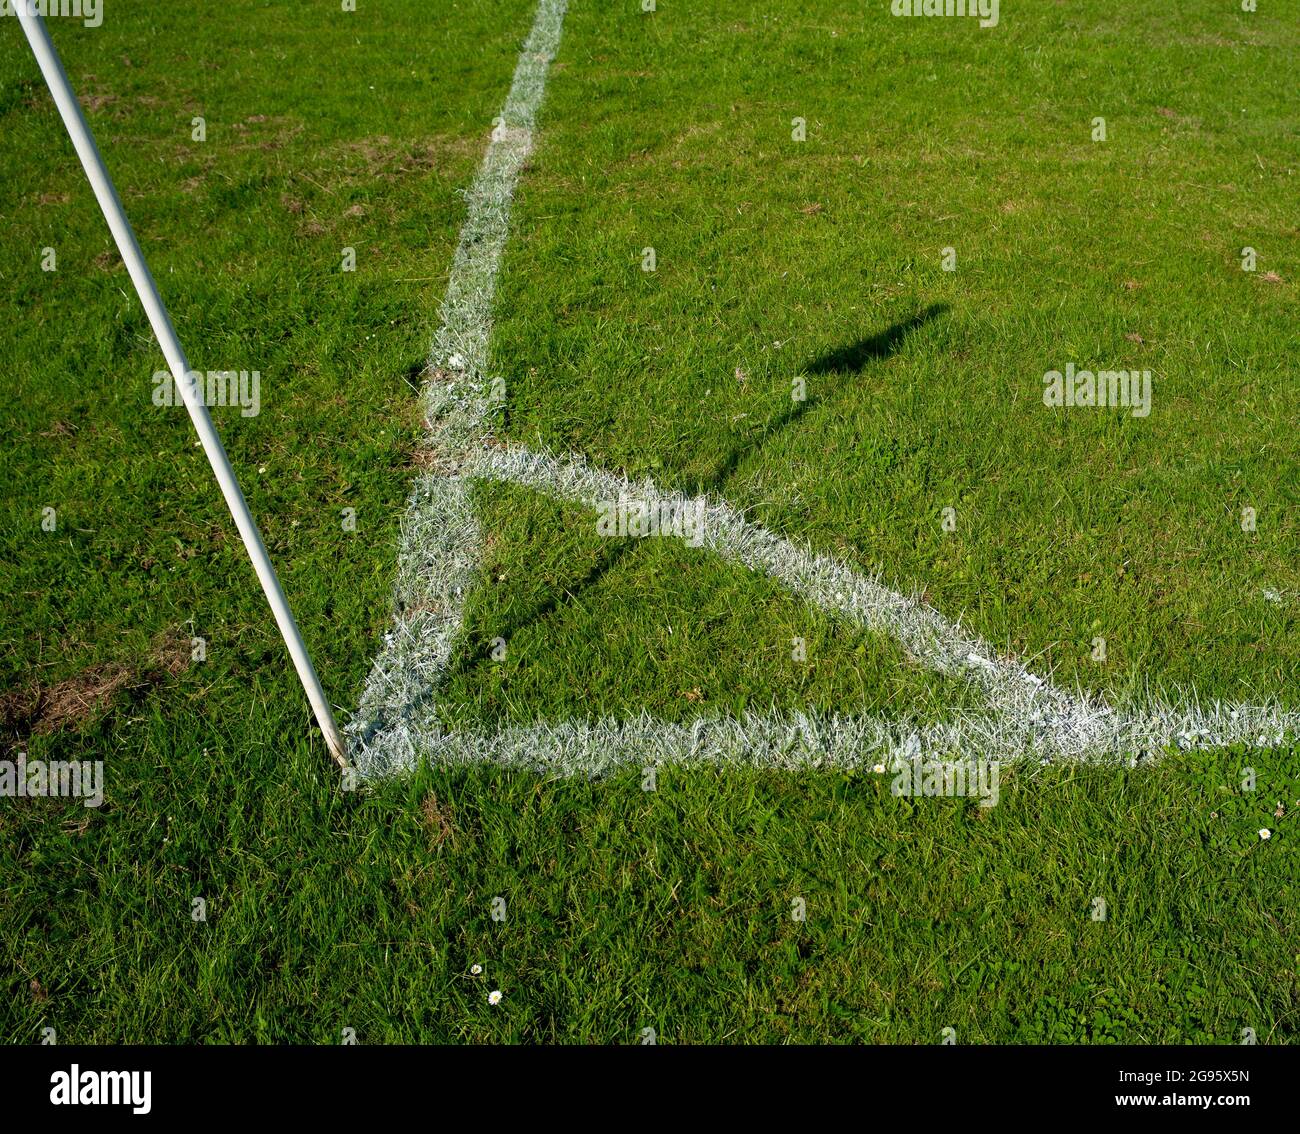 Un magnifique terrain de football amateur en gros plan sur la zone des coups de pied d'angle récemment peint et marqué avec l'ombre du drapeau d'angle du soleil. Banque D'Images